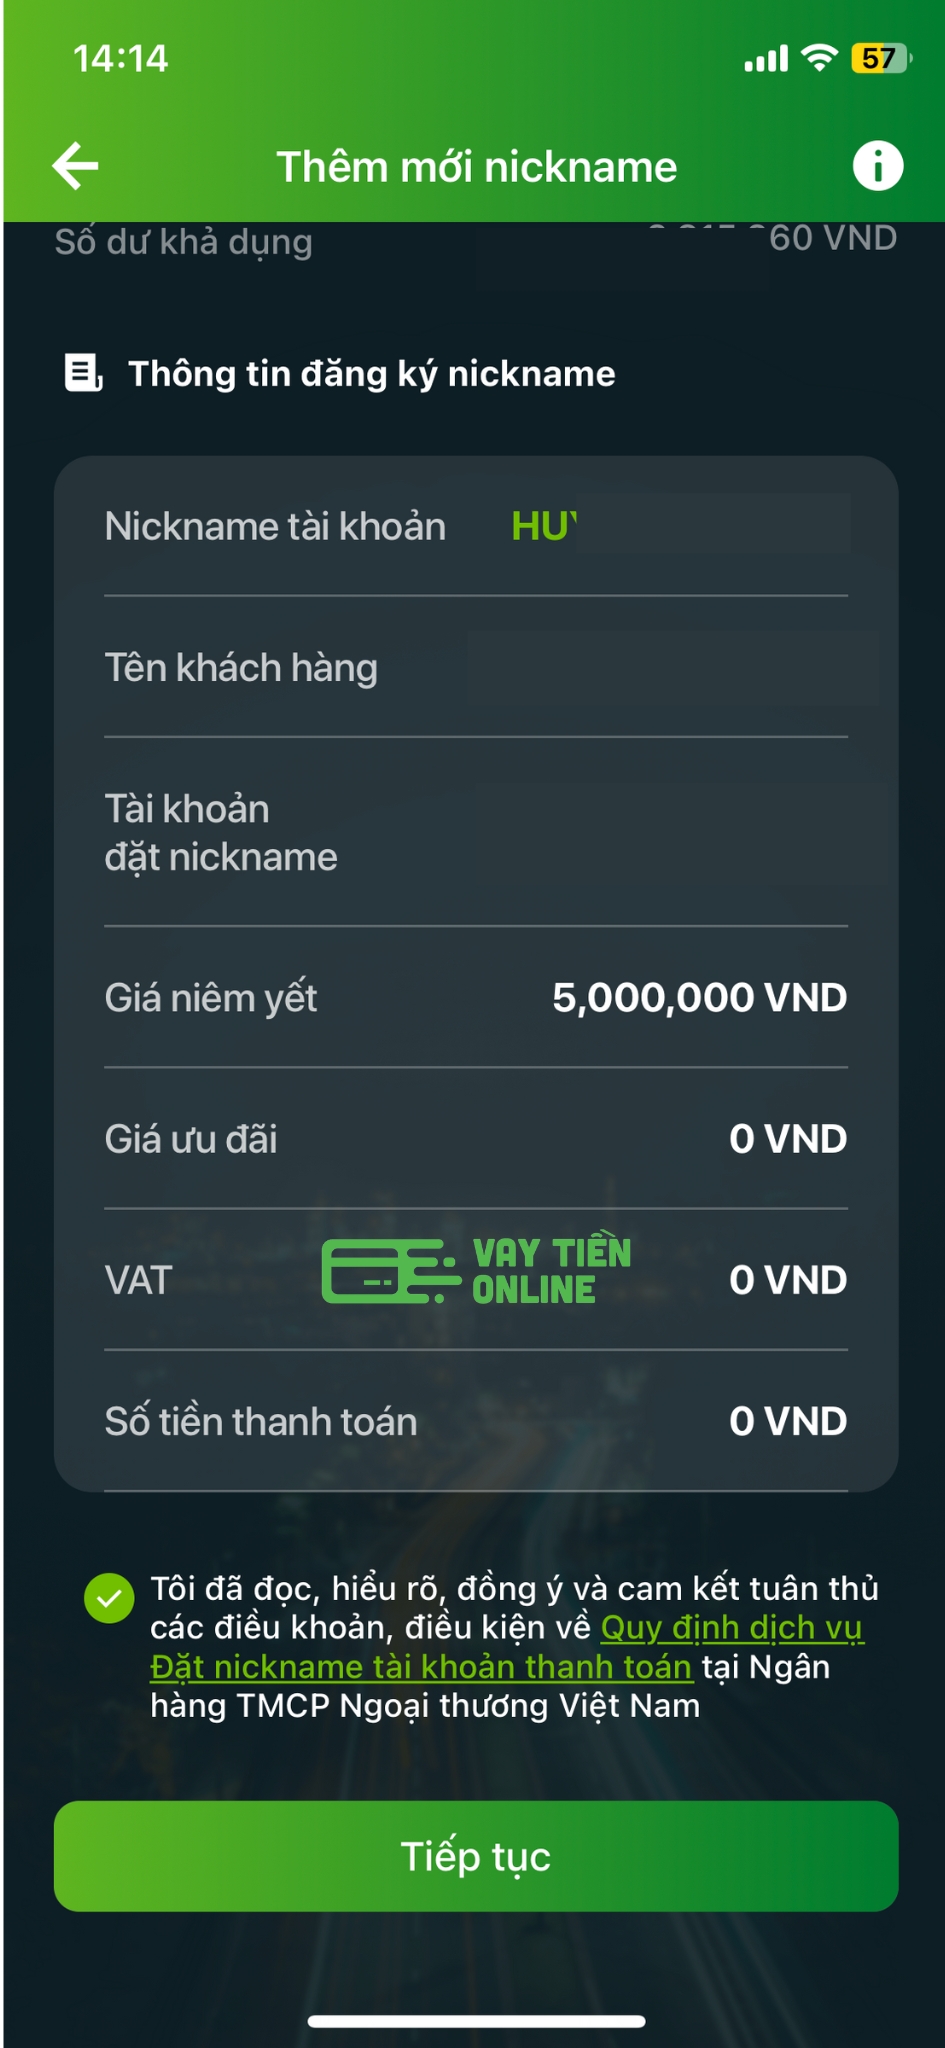 Đặt nickname tài khoản Vietcombank bước 5